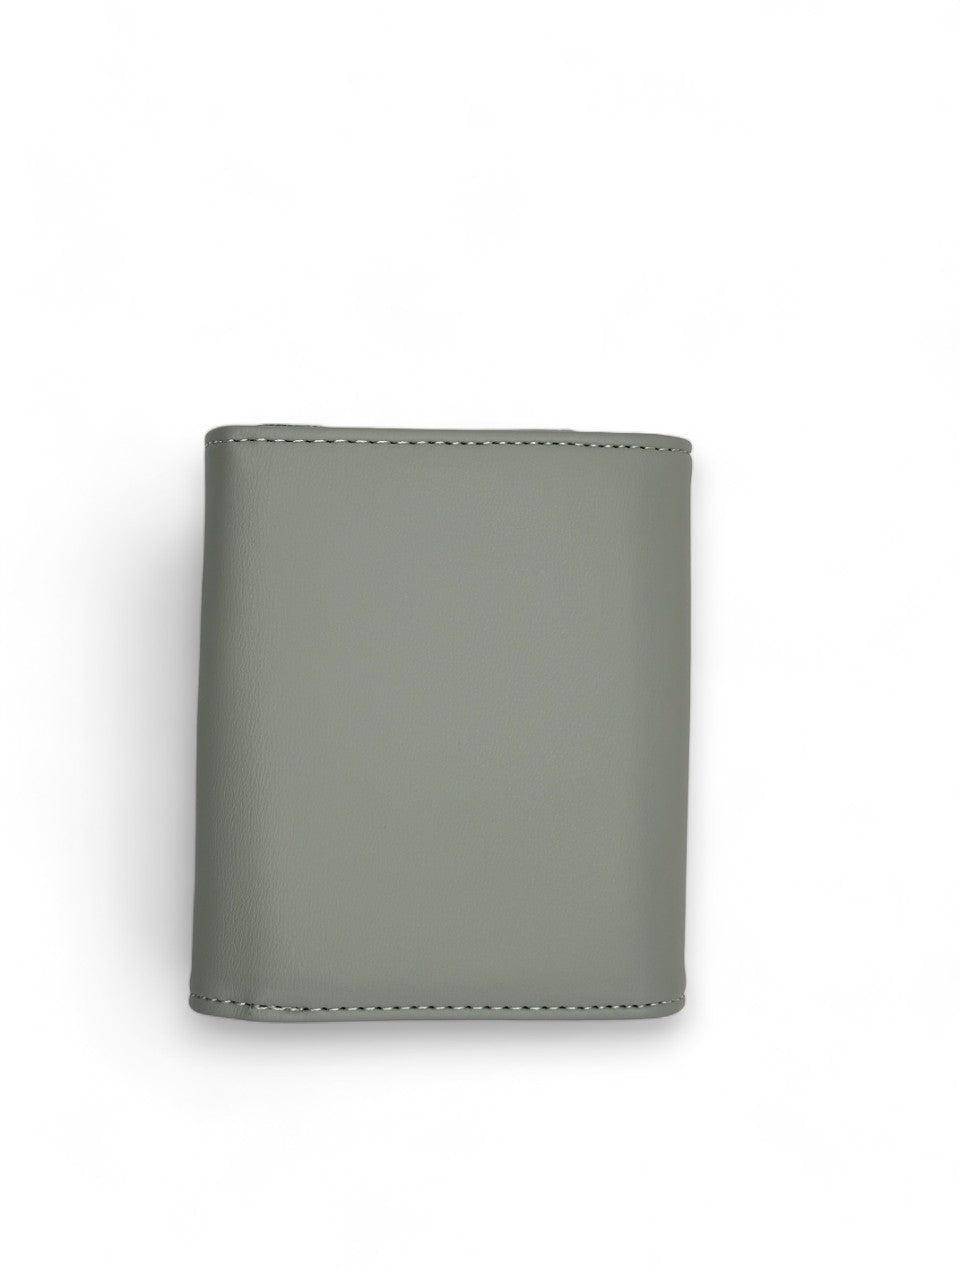 محفظة نسائية باللون الازرق بتصميم بسيط وحجم مناسب - KSA